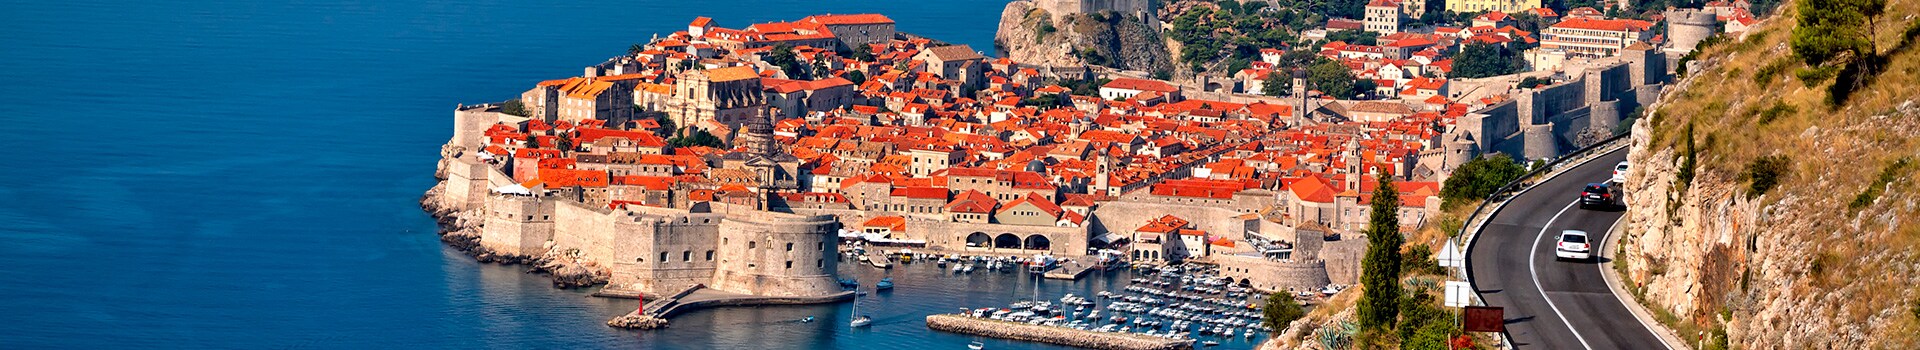 Salonicco - Dubrovnik